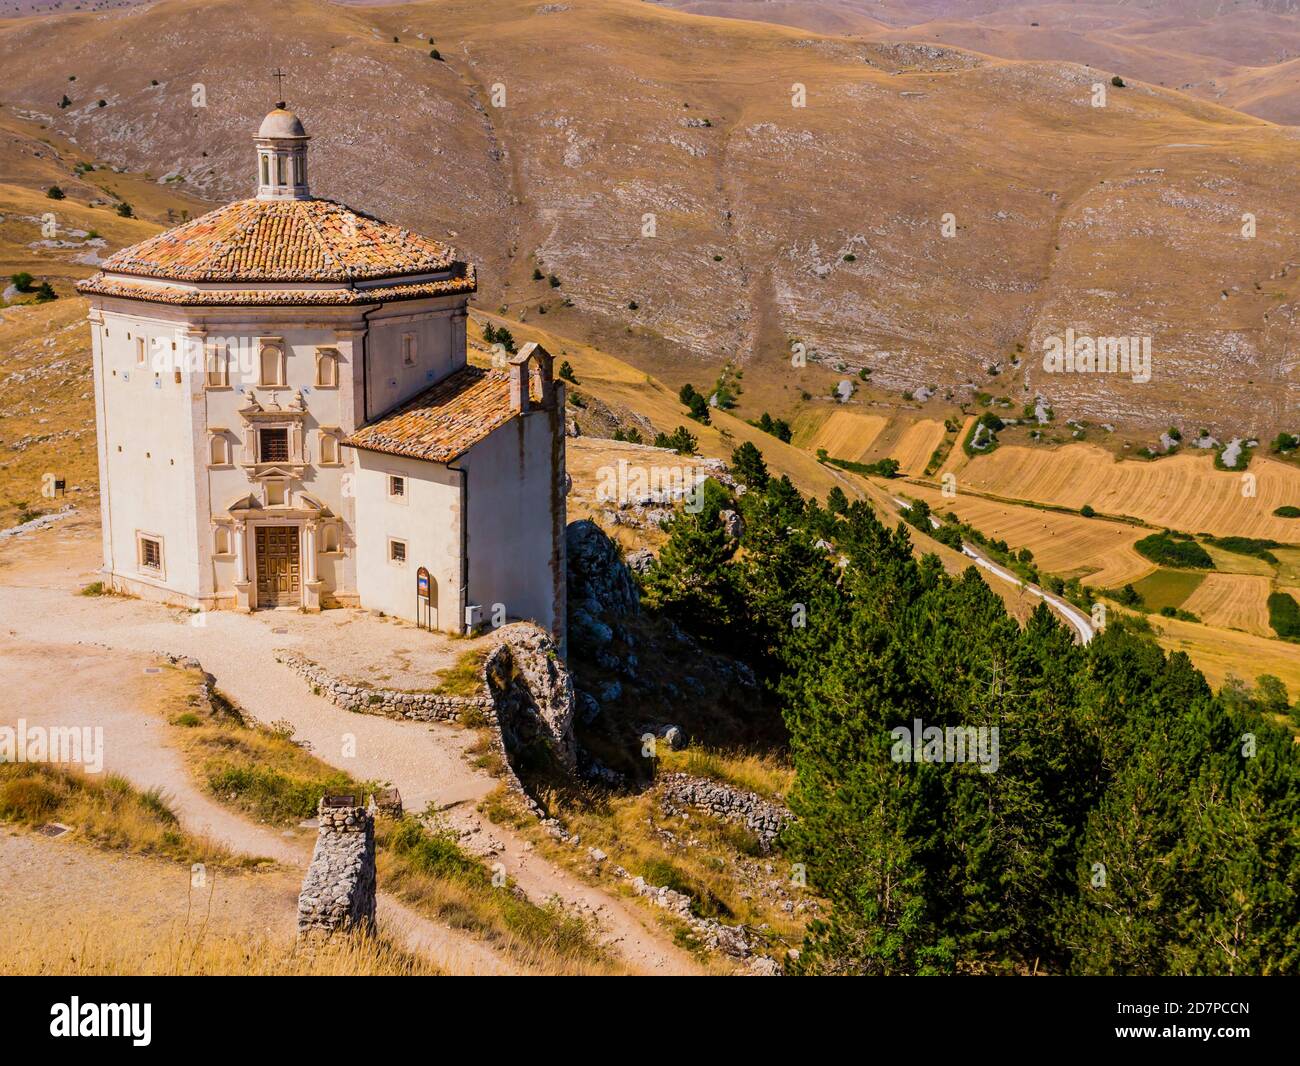 Church of Santa Maria della Pietà, a religious complex beside Rocca Calascio ruins, Gran Sasso National Park, Abruzzo region, Italy Stock Photo